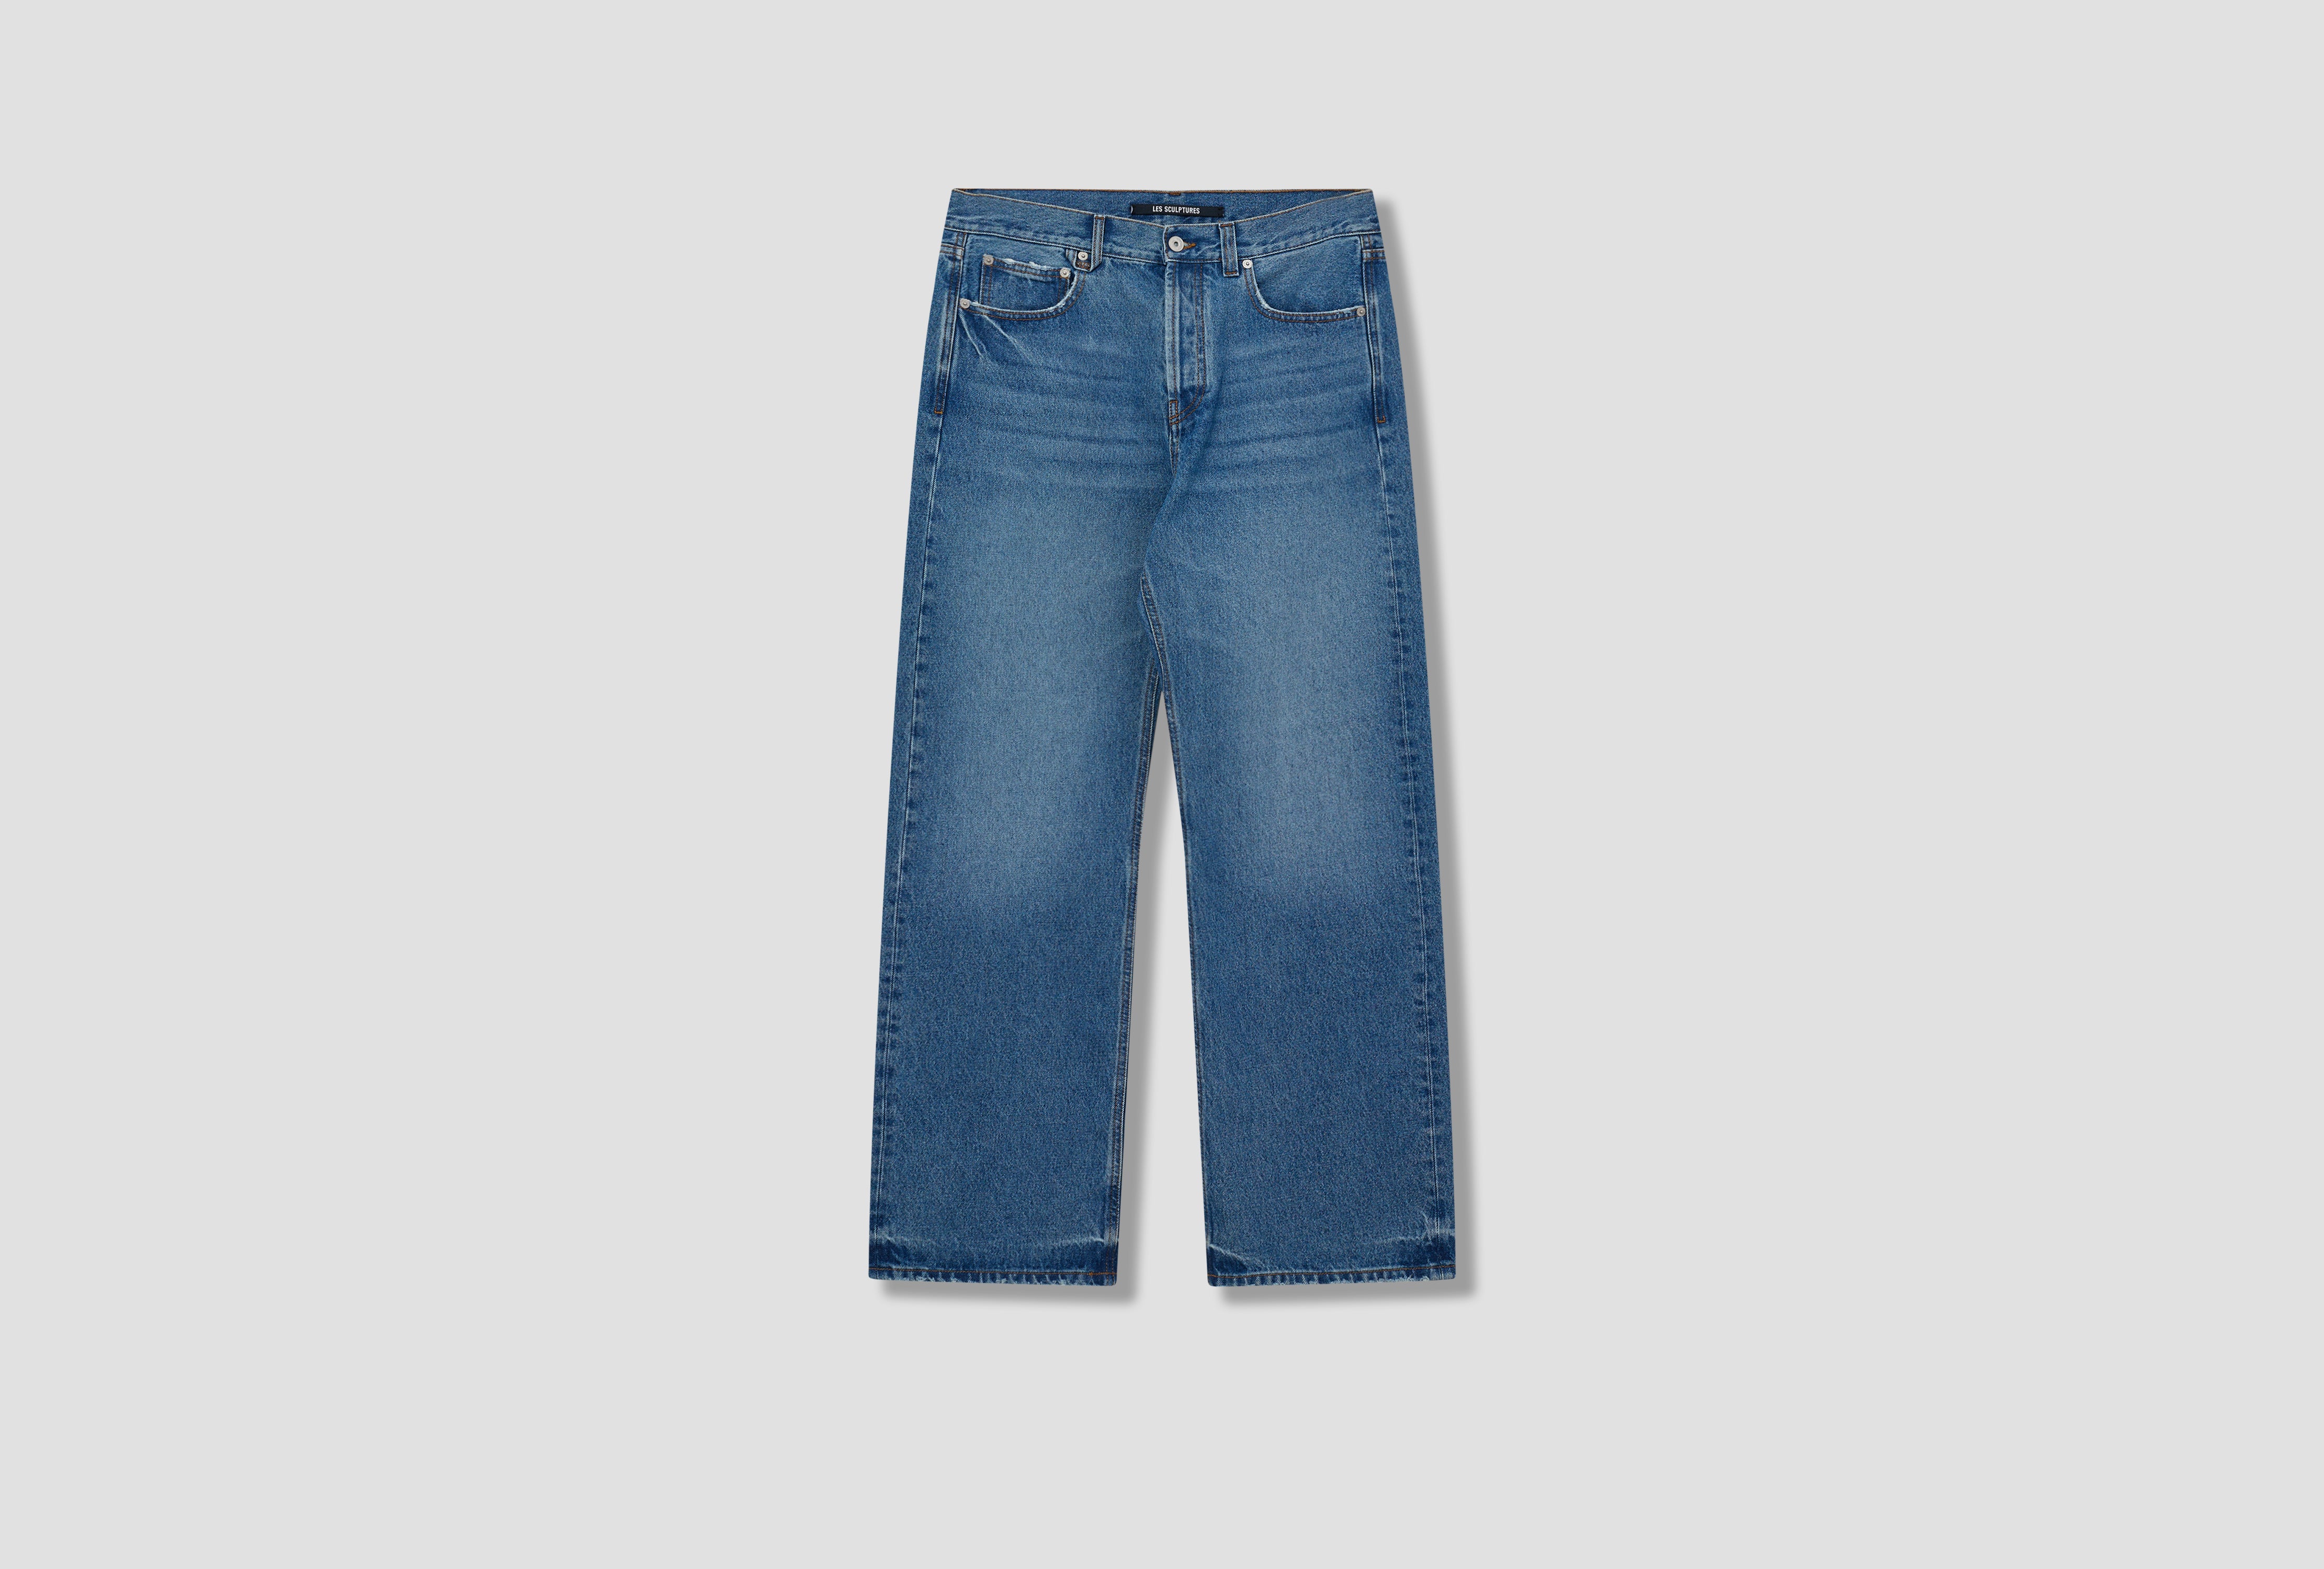 Jeans | Shop Online at HARRESØ